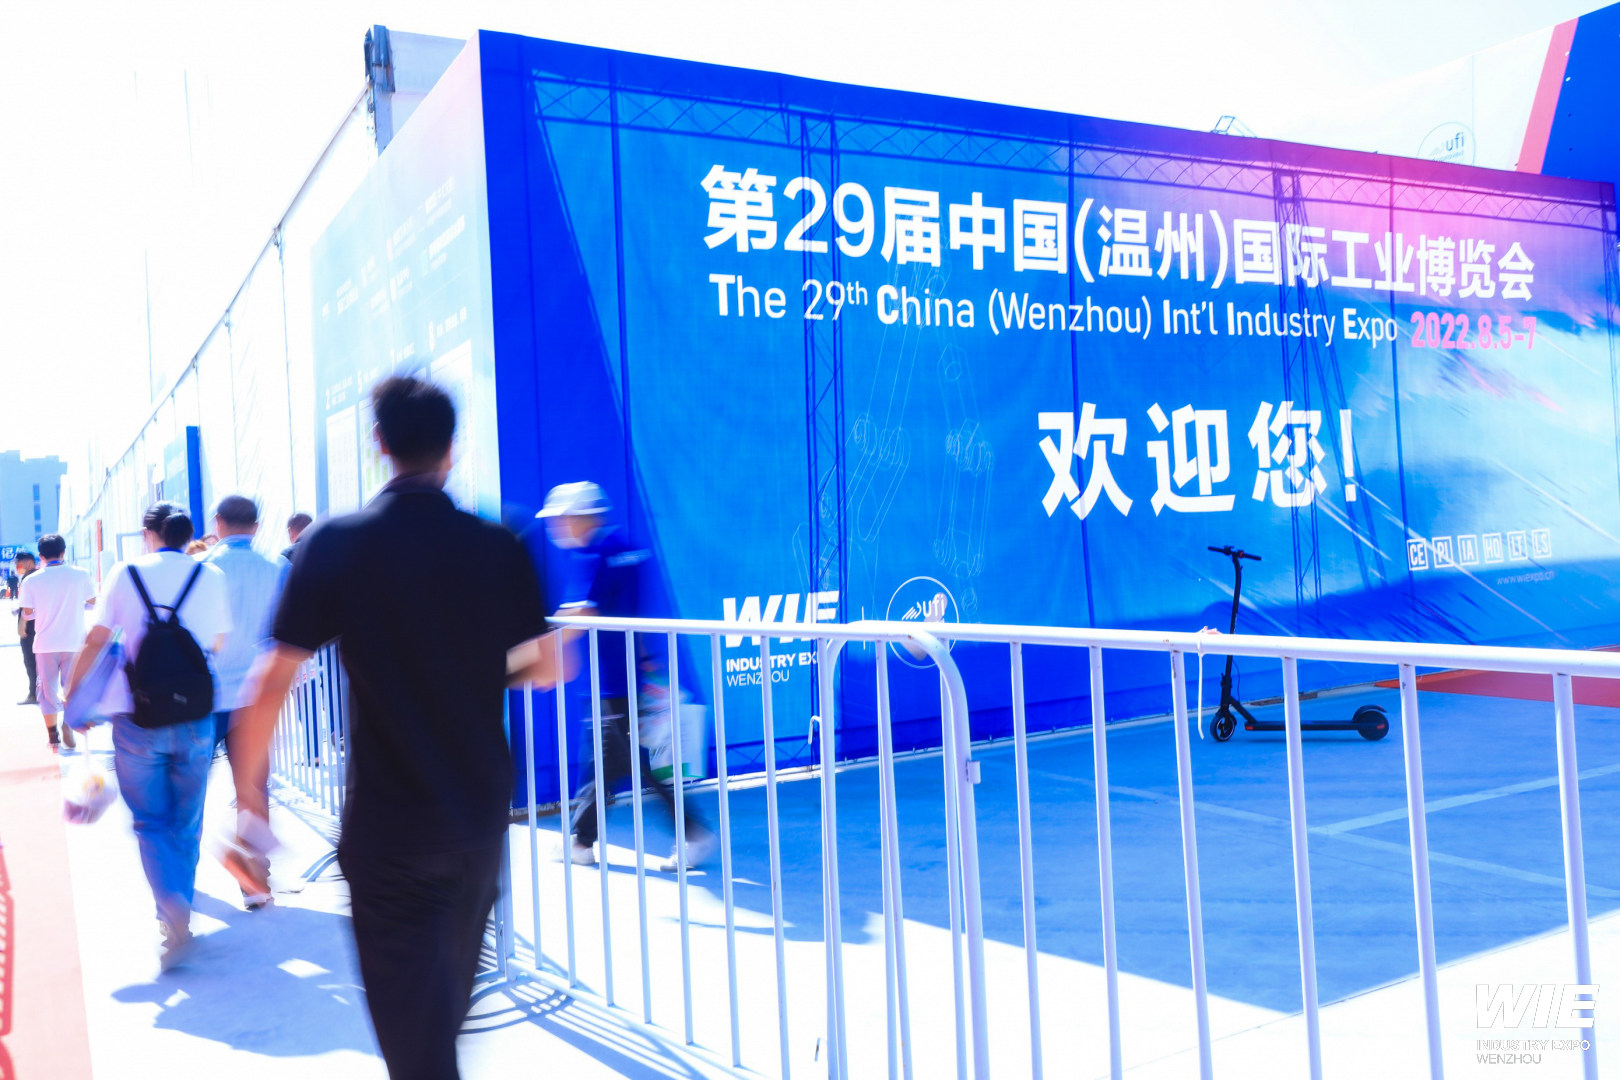 寧波怡信邀您參加第29屆中國(溫州) 國際工業博覽會